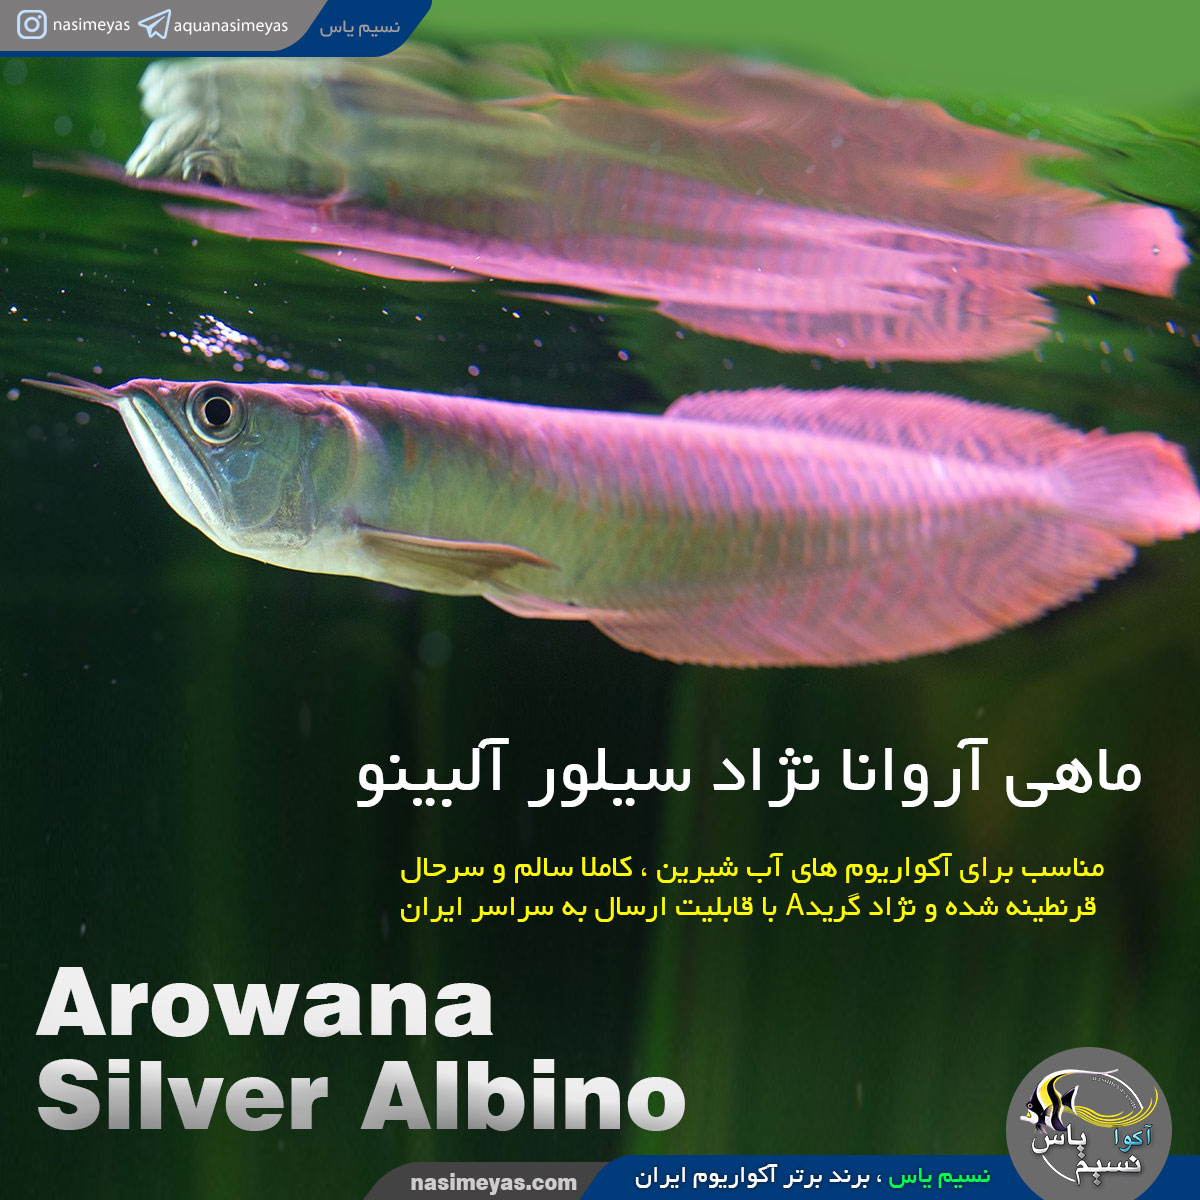 ماهی آروانا سیلور آلبینو